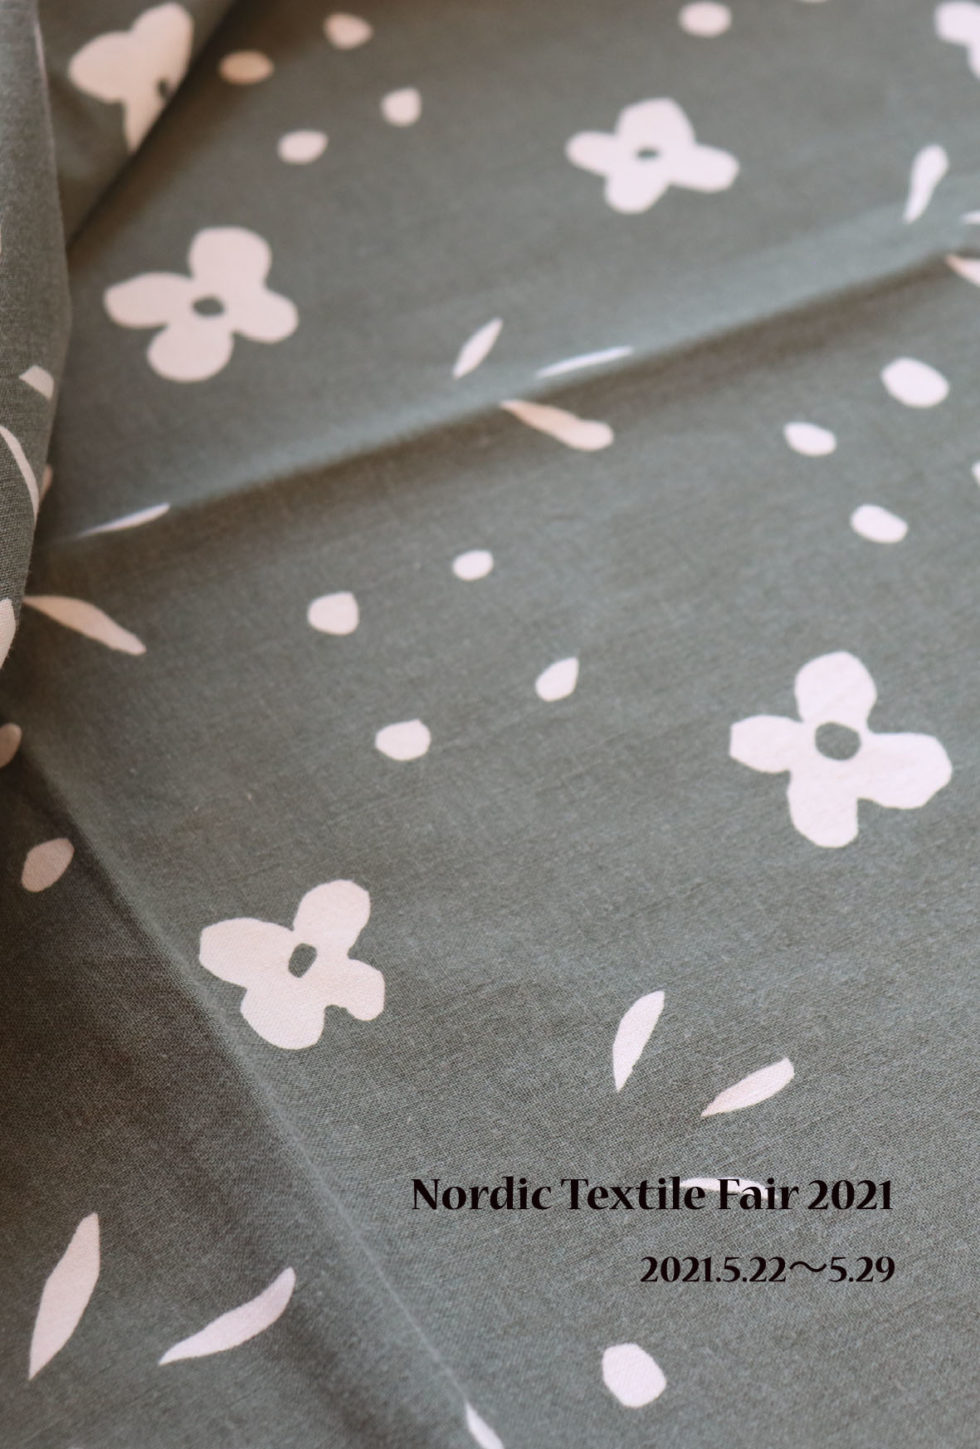 vintagetextile marimekko kukkaketo fujiwo ishimoto 北欧ビンテージ　北欧ビンテージテキスタイル　布展　スウェーデン織物　フレミッシュ織　ツヴィスト刺繍